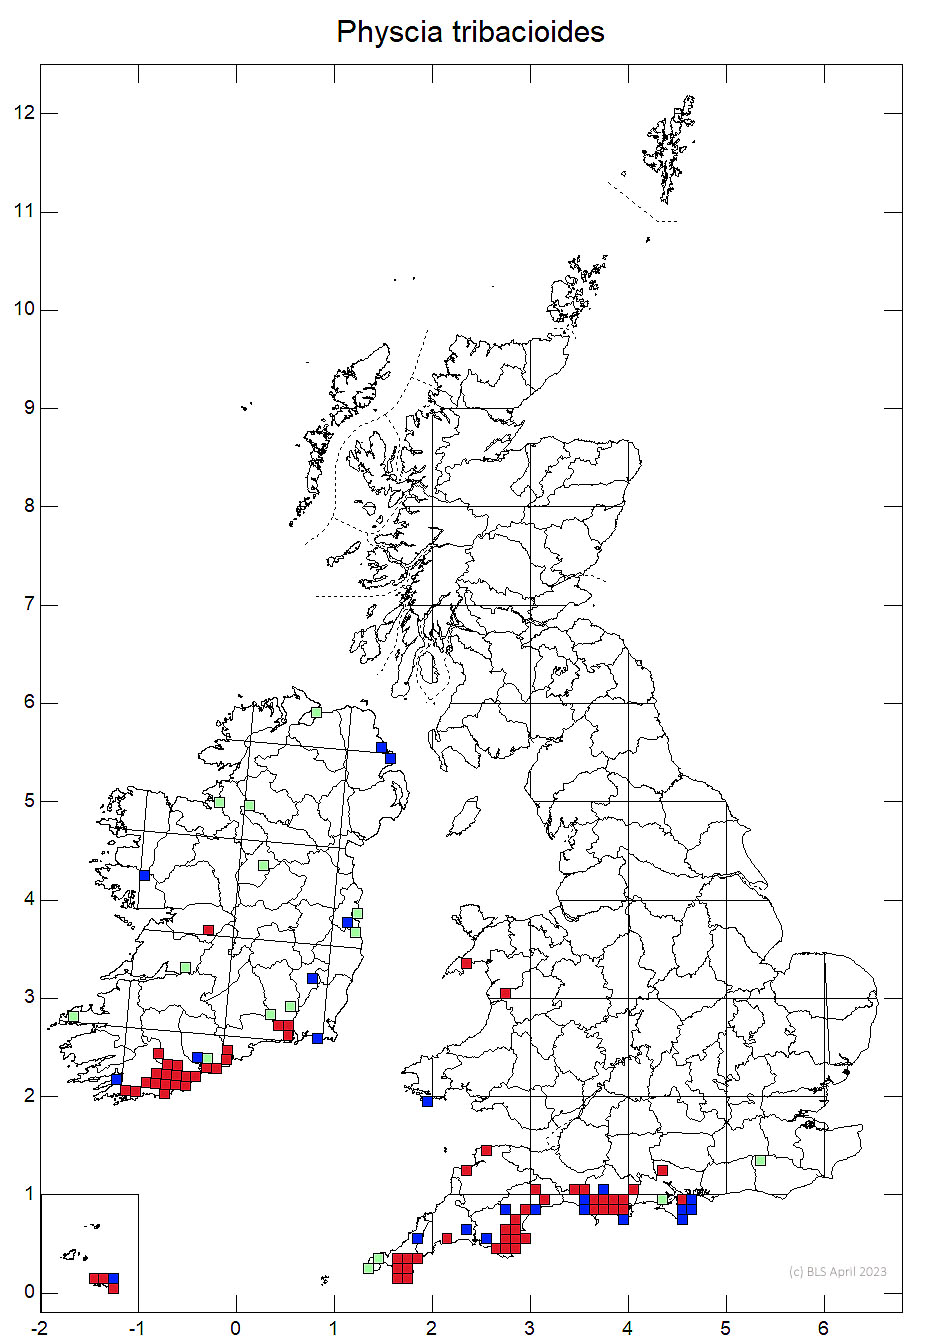 Physcia tribacioides 10km sq distribution map